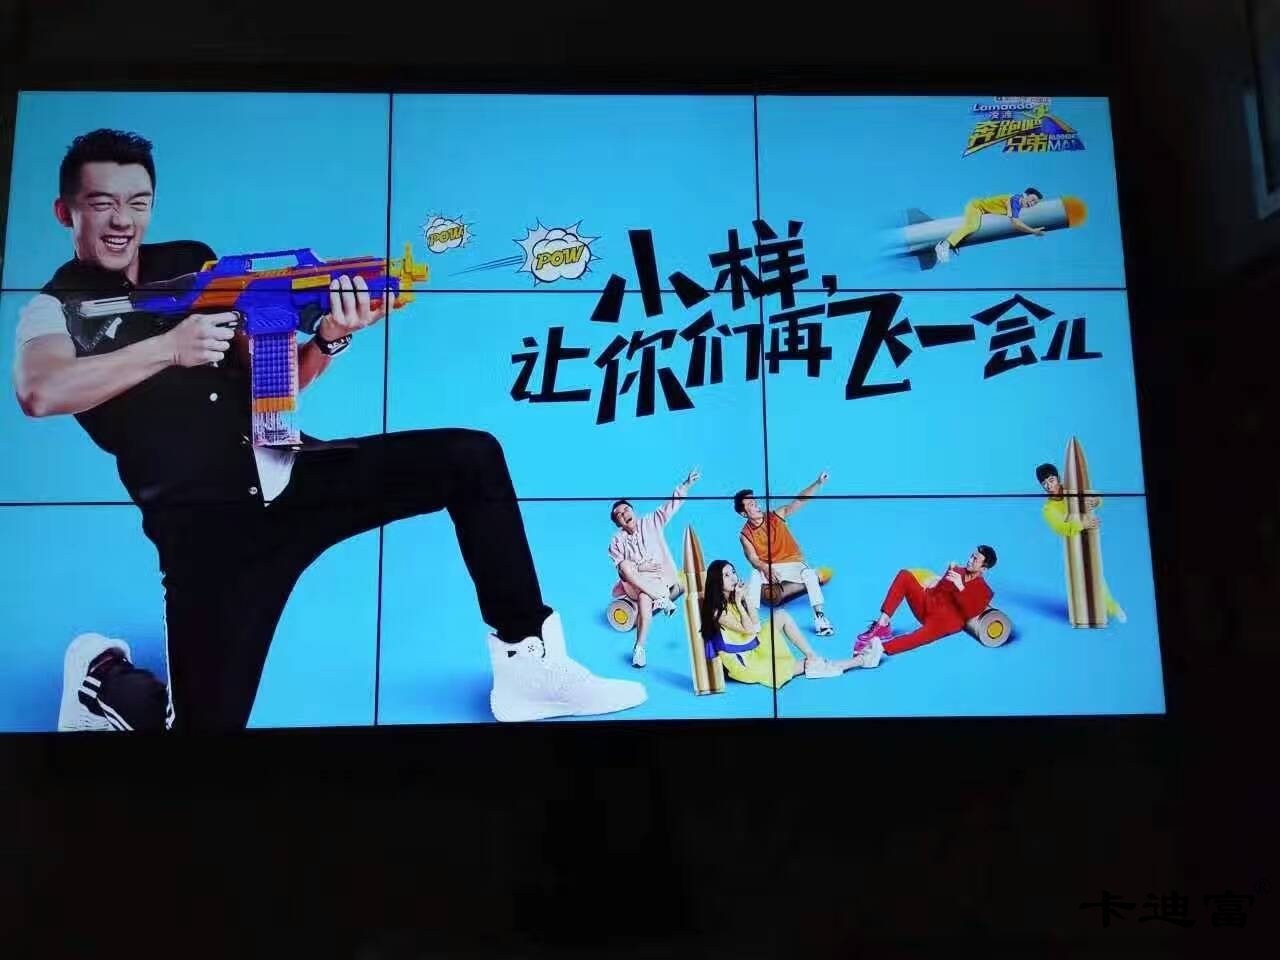 广州客运站46寸大屏幕ray竞技app
解决方案